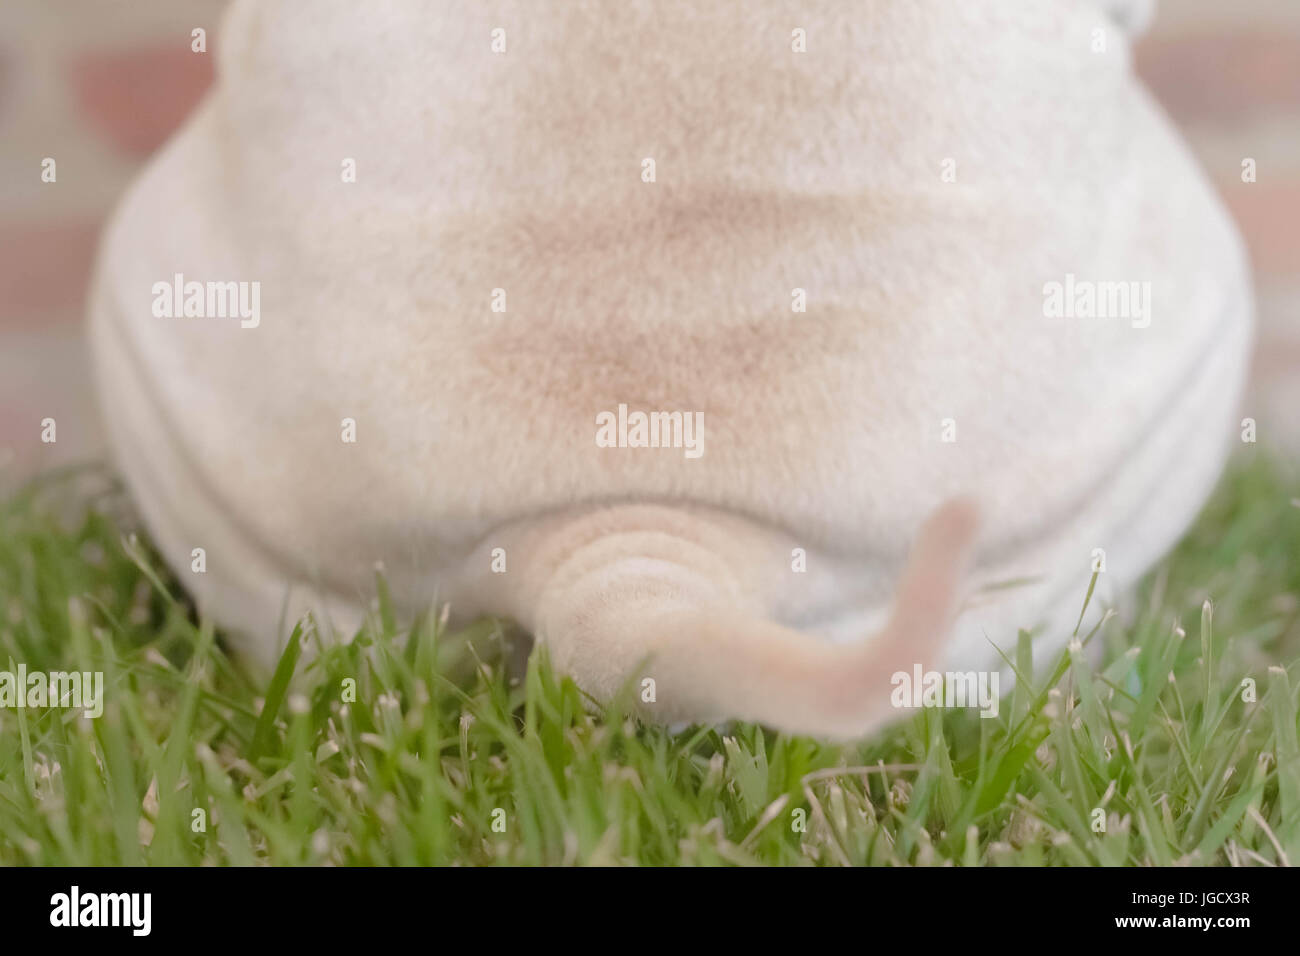 Vue arrière d'un Shar-pei dog sitting on grass Banque D'Images